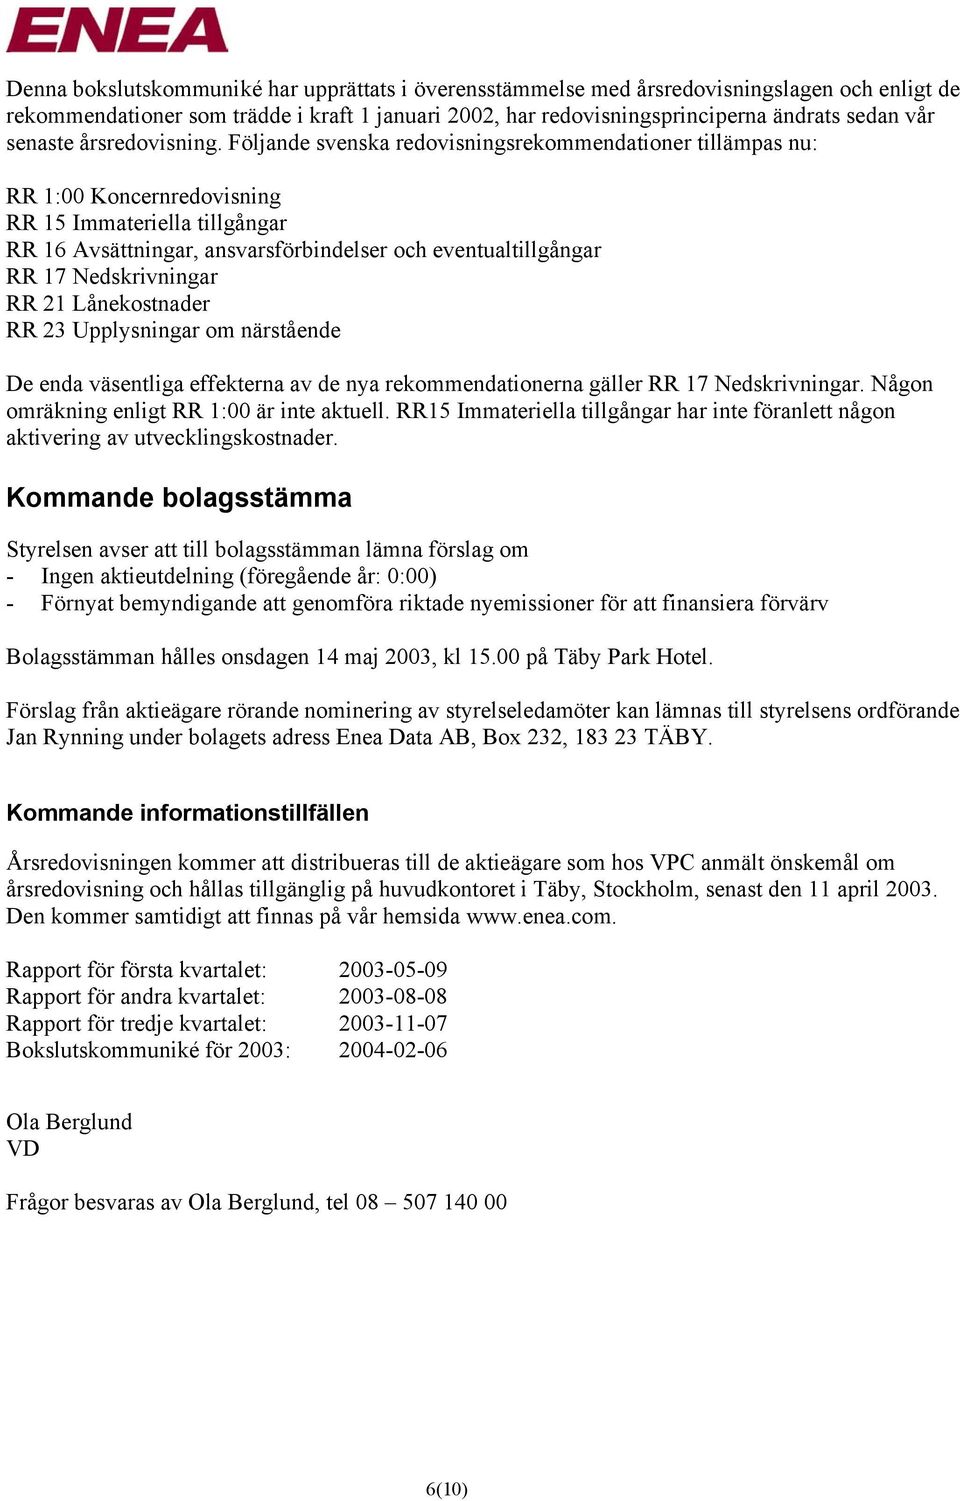 Följande svenska redovisningsrekommendationer tillämpas nu: RR 1:00 Koncernredovisning RR 15 Immateriella tillgångar RR 16 Avsättningar, ansvarsförbindelser och eventualtillgångar RR 17